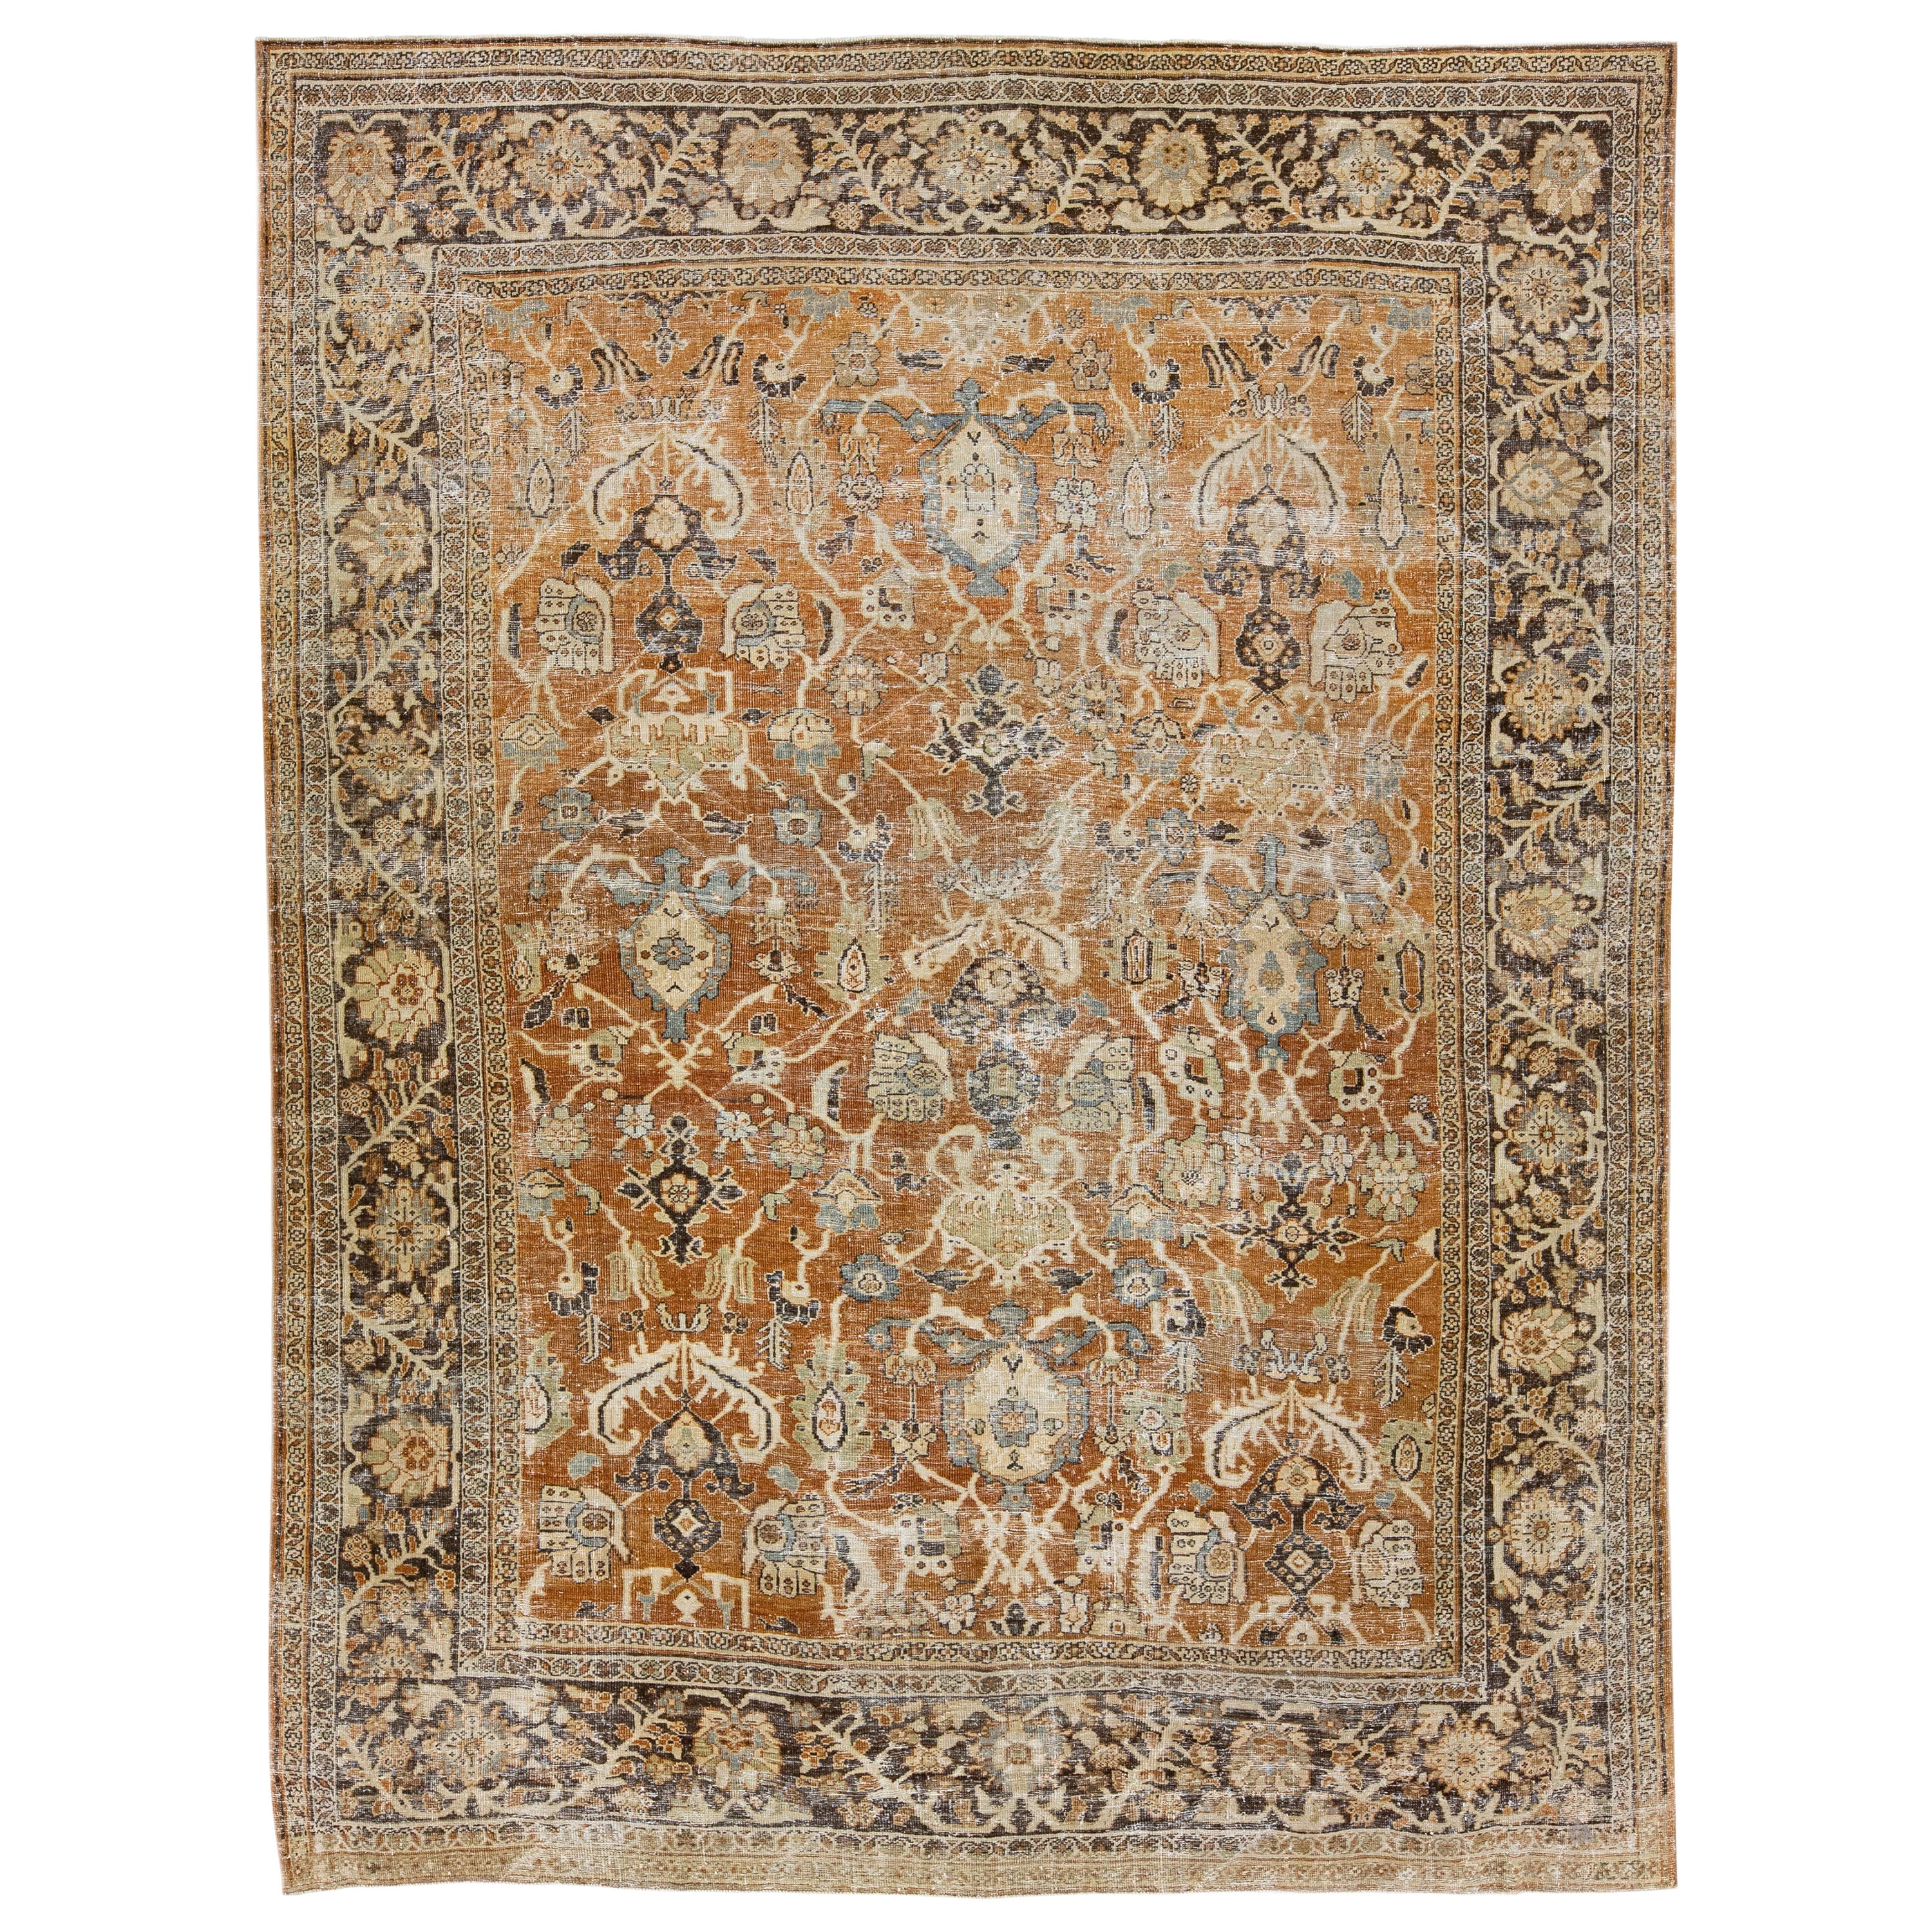 Tapis persan Mahal ancien en laine vieillie rouille fait à la main avec motifs floraux